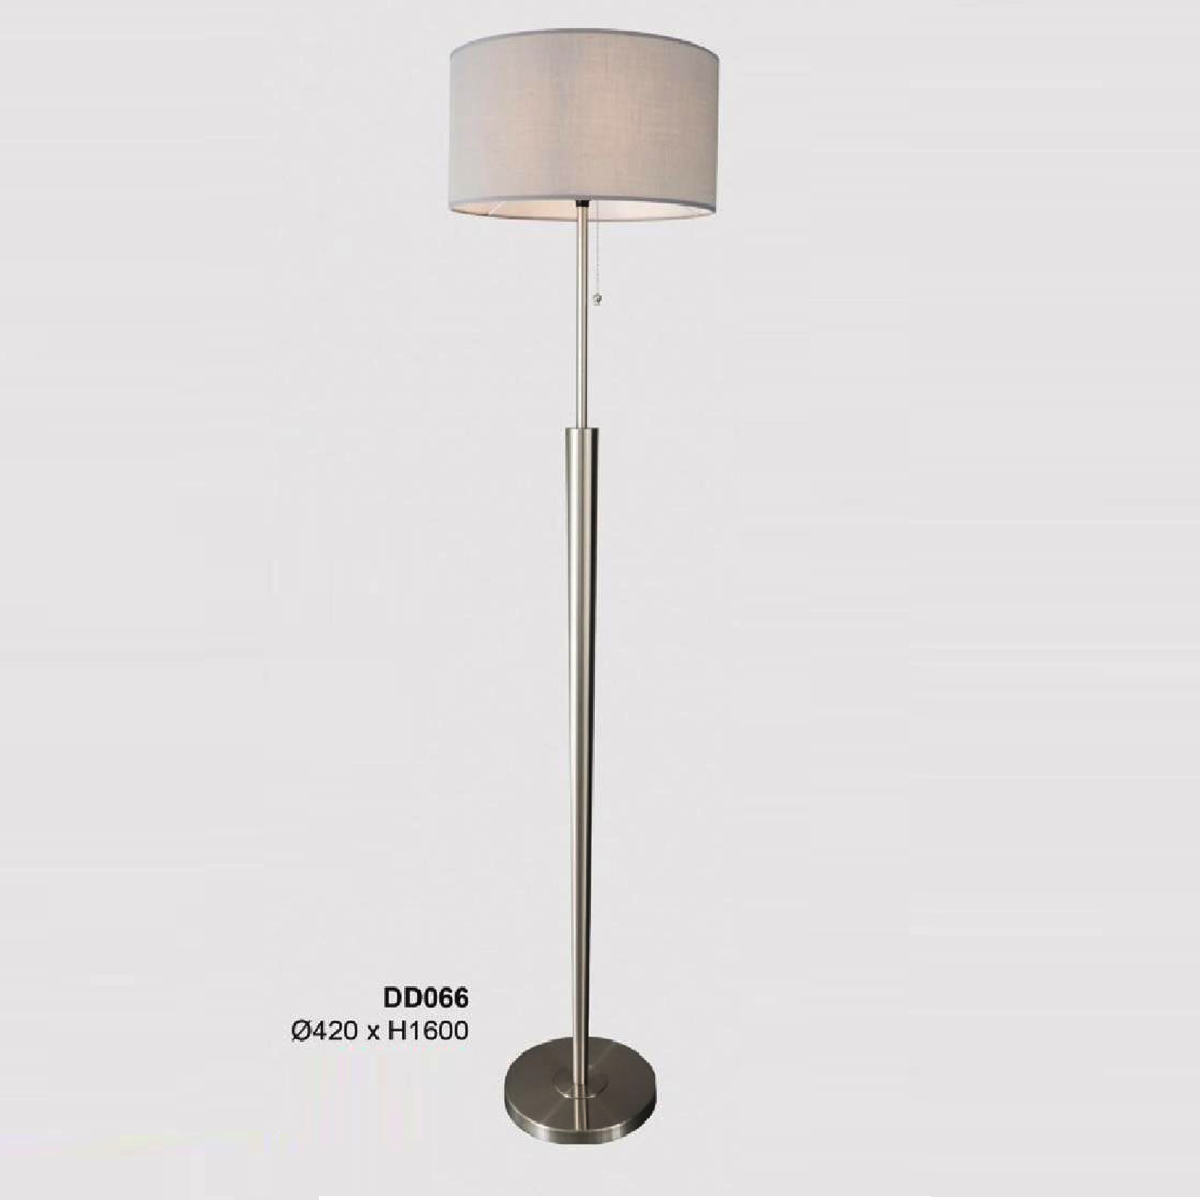 35 - DD066: Đèn cây đứng đầu giường/ bàn - KT: Ø420mm x H1600mm - Bóng đèn E27 x 1 bóng